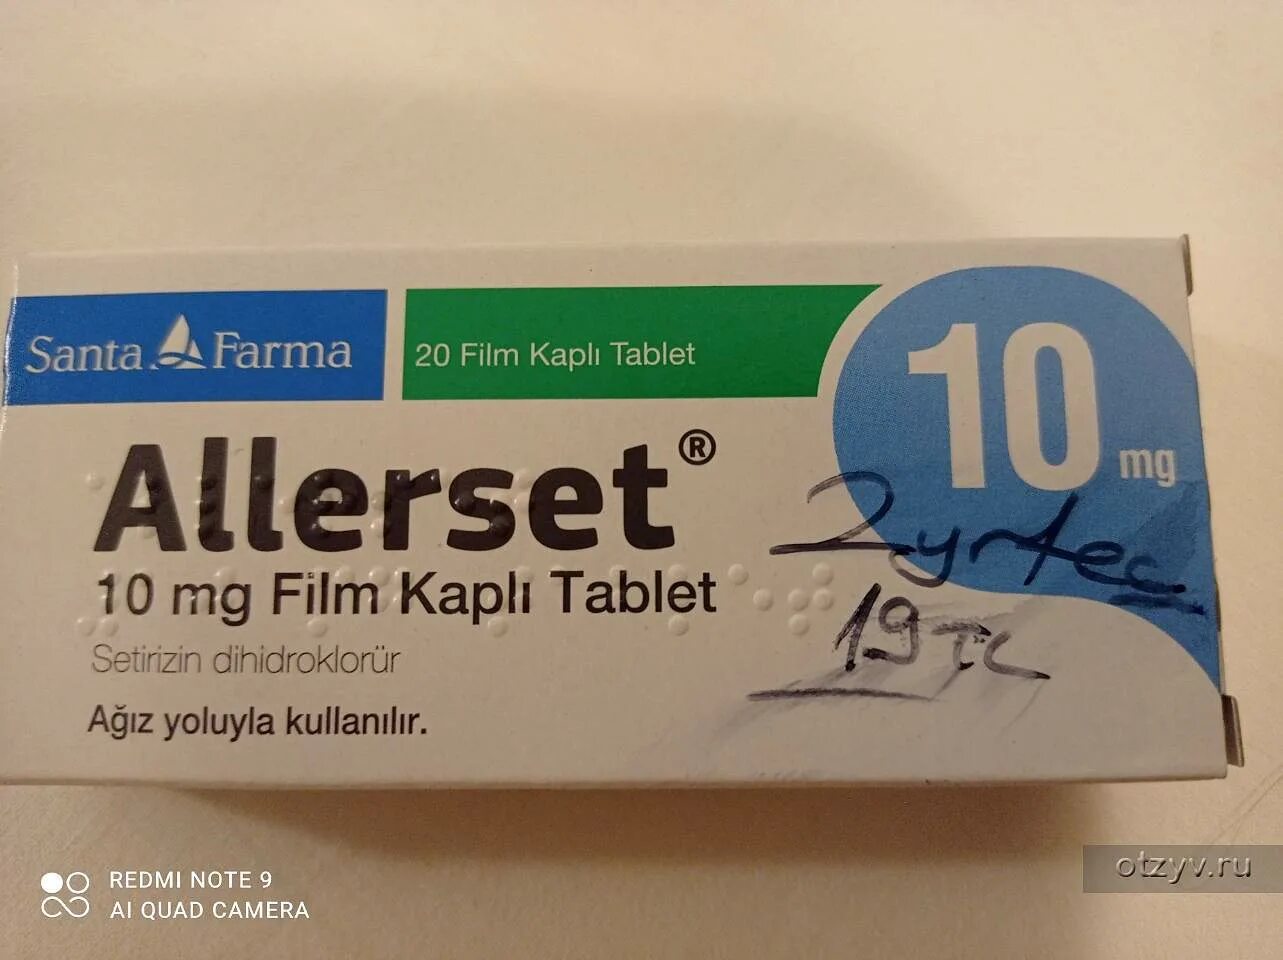 Турция лекарства какие лучше. Турецкие таблетки. Турецкие лекарства от аллергии. Лекарство от аллергии Турция. Препараты от аллергии в Турции.